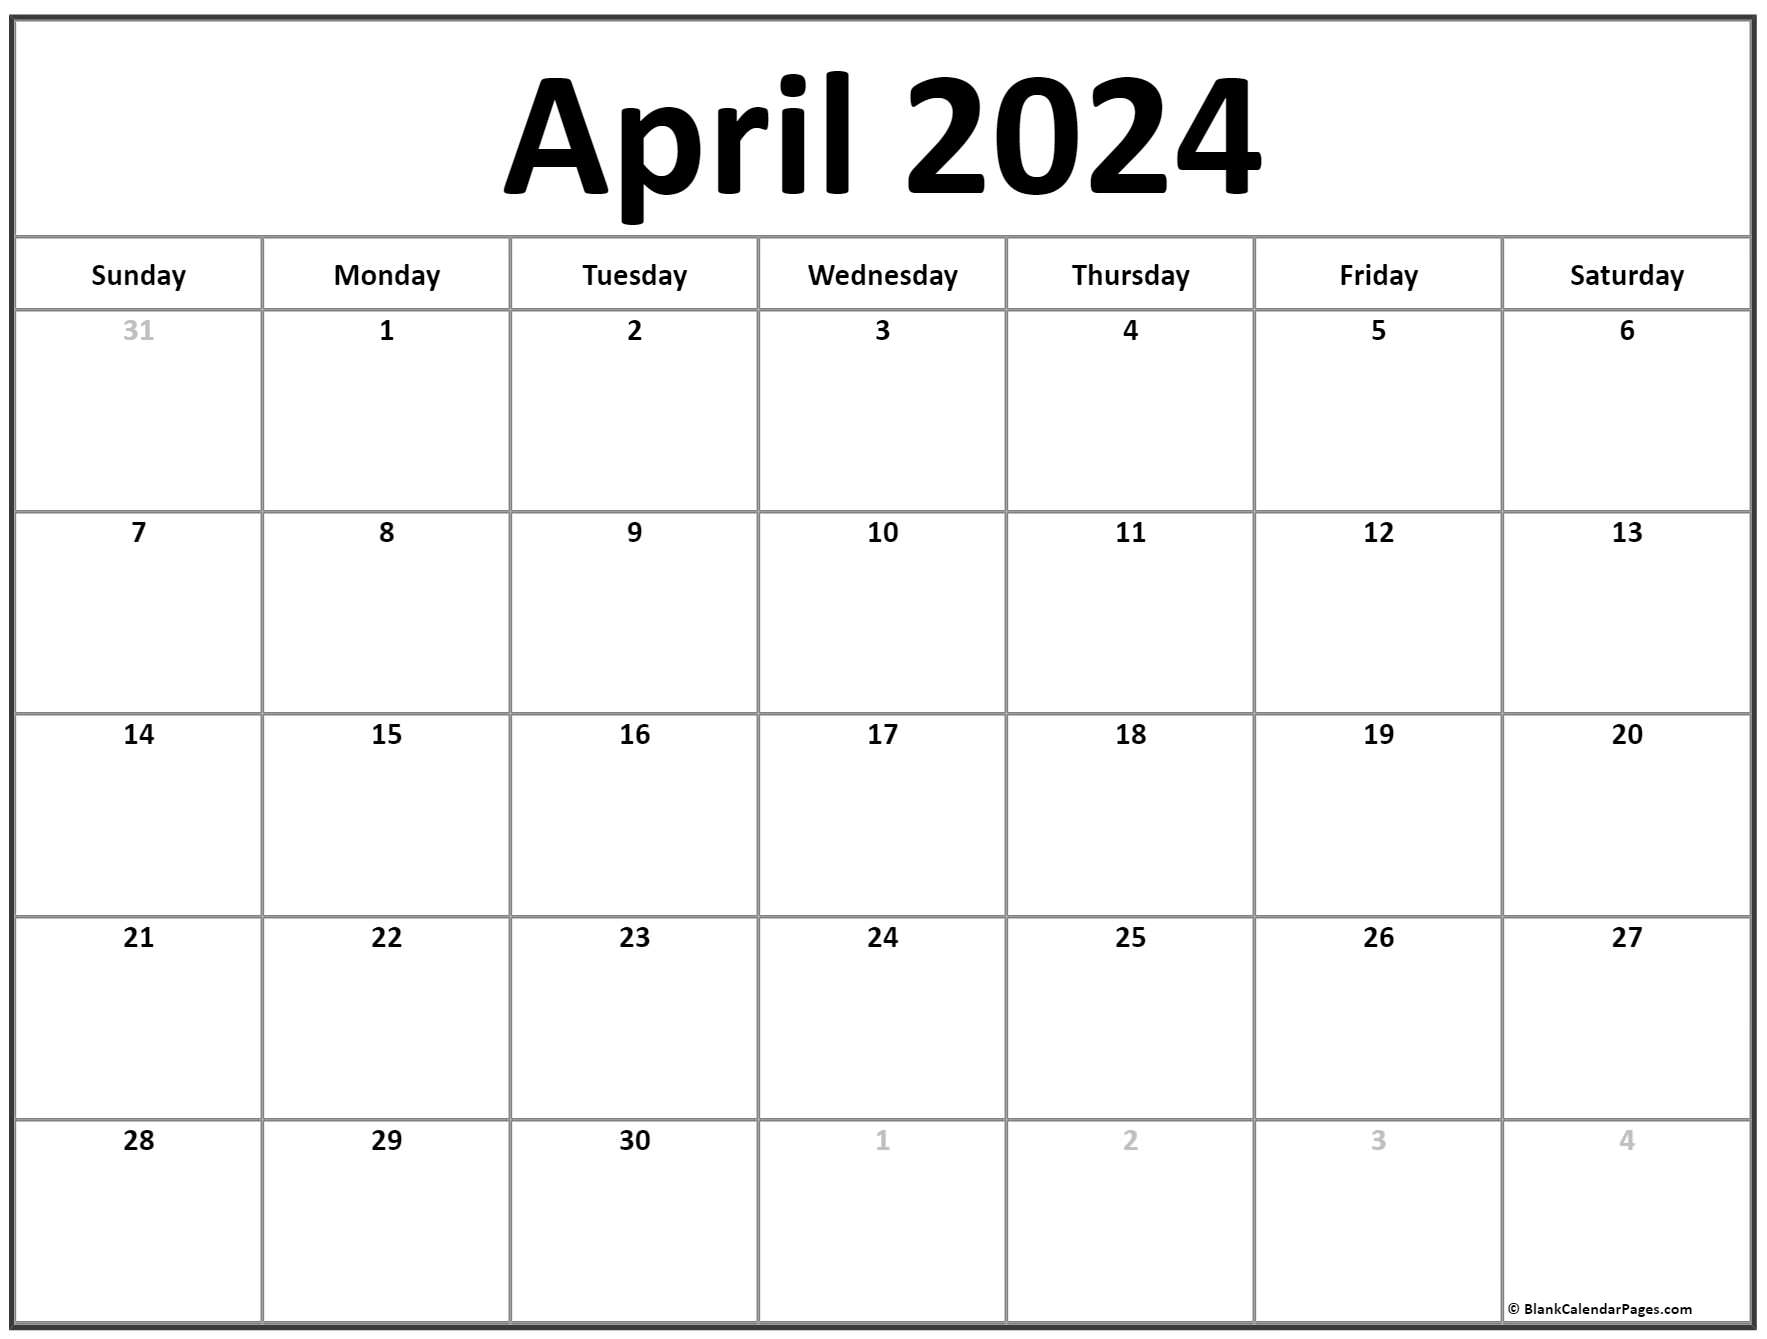 April Blank Calendar 2024 - Easy to Use Calendar App 2024